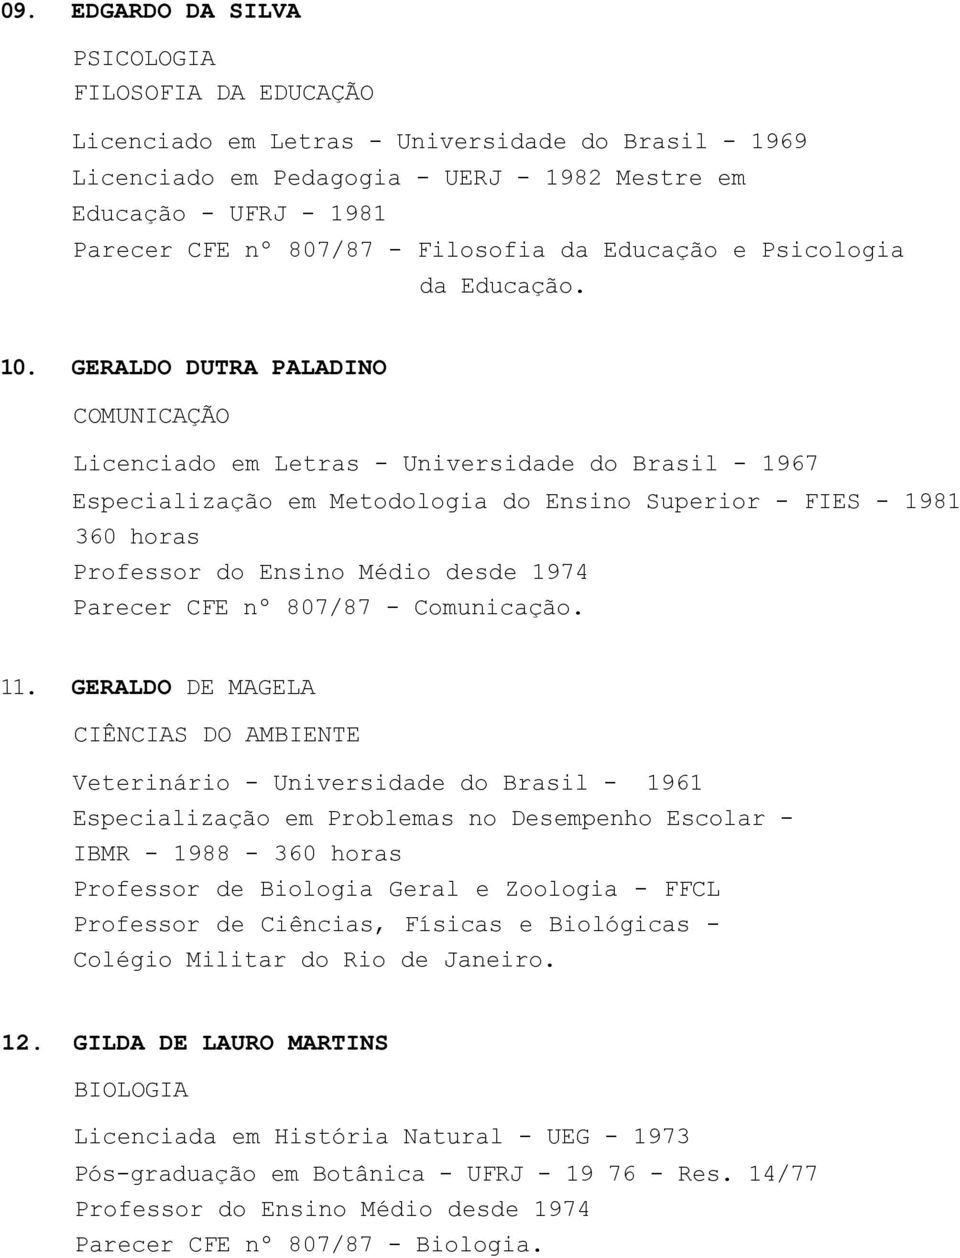 GERALDO DUTRA PALADINO COMUNICAÇÃO Licenciado em Letras - Universidade do Brasil - 1967 Especialização em Metodologia do Ensino Superior - FIES - 1981 360 horas Professor do Ensino Médio desde 1974